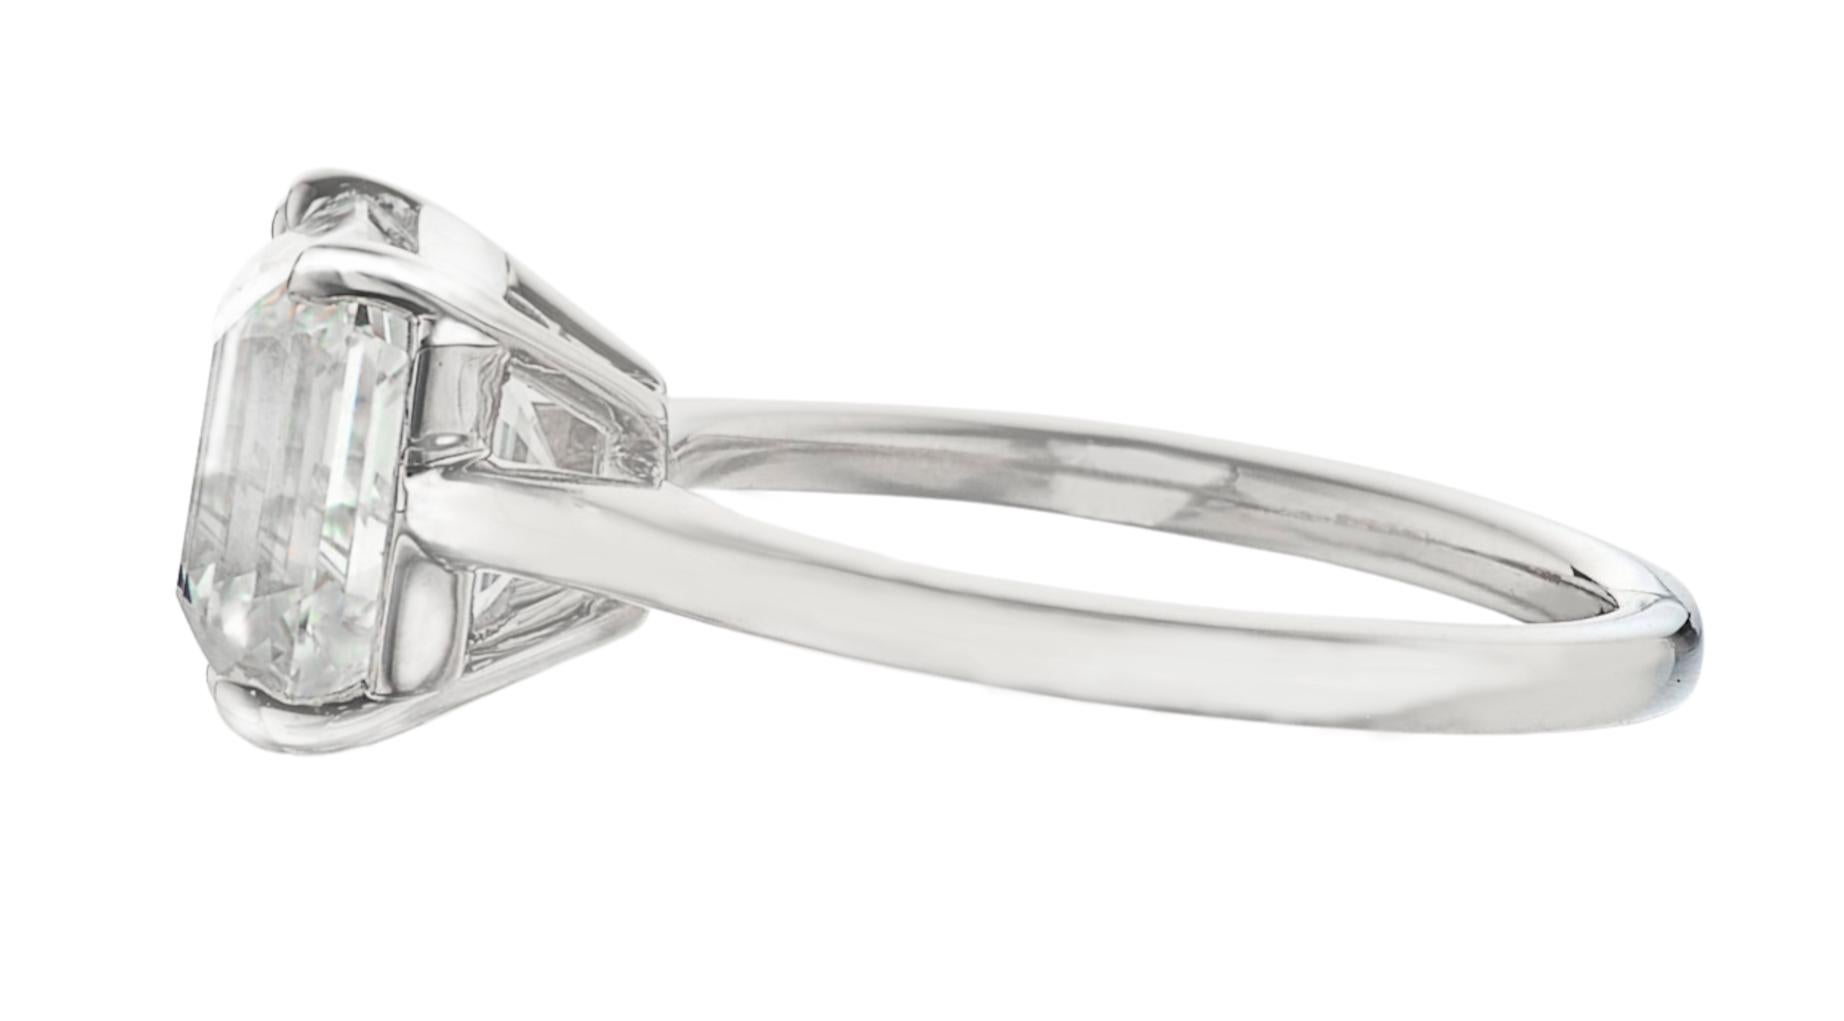 Ein wunderschöner Ring mit einem 3 Karat schweren quadratischen Diamanten im Smaragdschliff, der laut GIA-Bericht die Farbe G und die Reinheit VS1 aufweist.
Die Fassung ist aus massivem Platin handgefertigt.